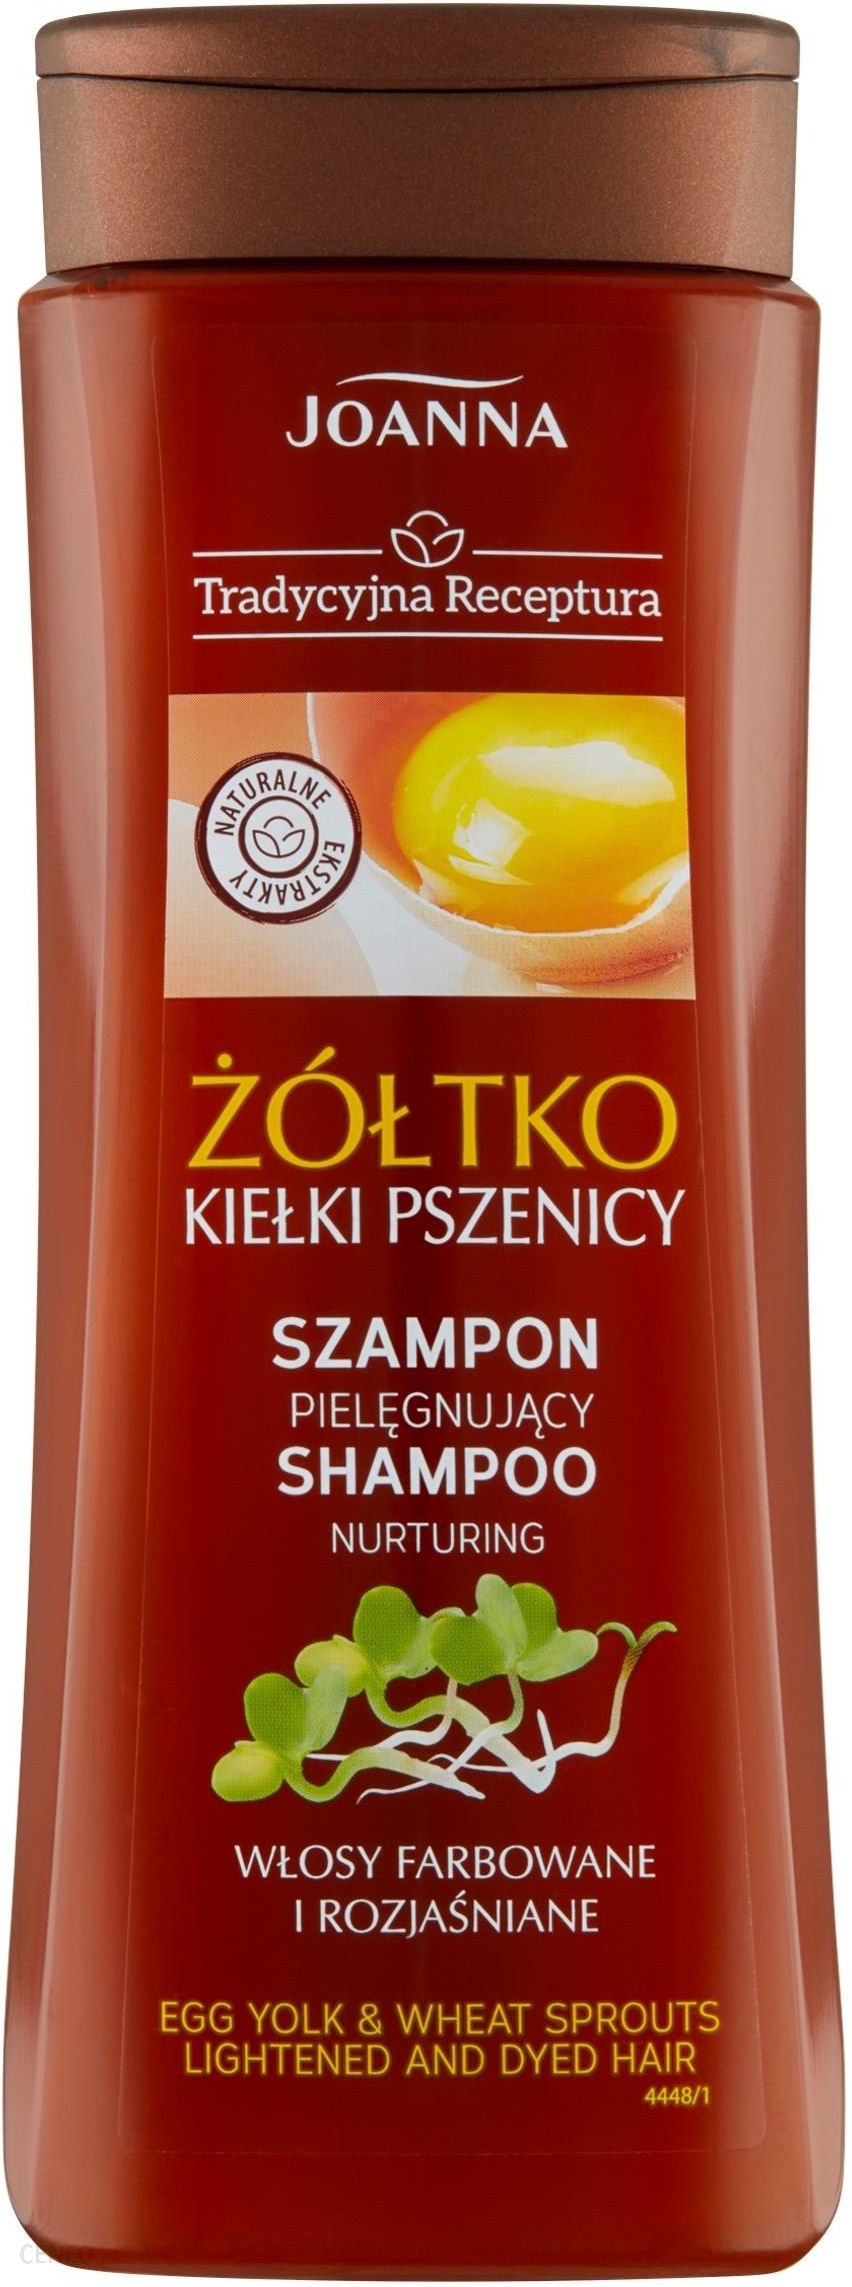 joanna tradycyjna receptura szampon odżywka do włosów 300 g